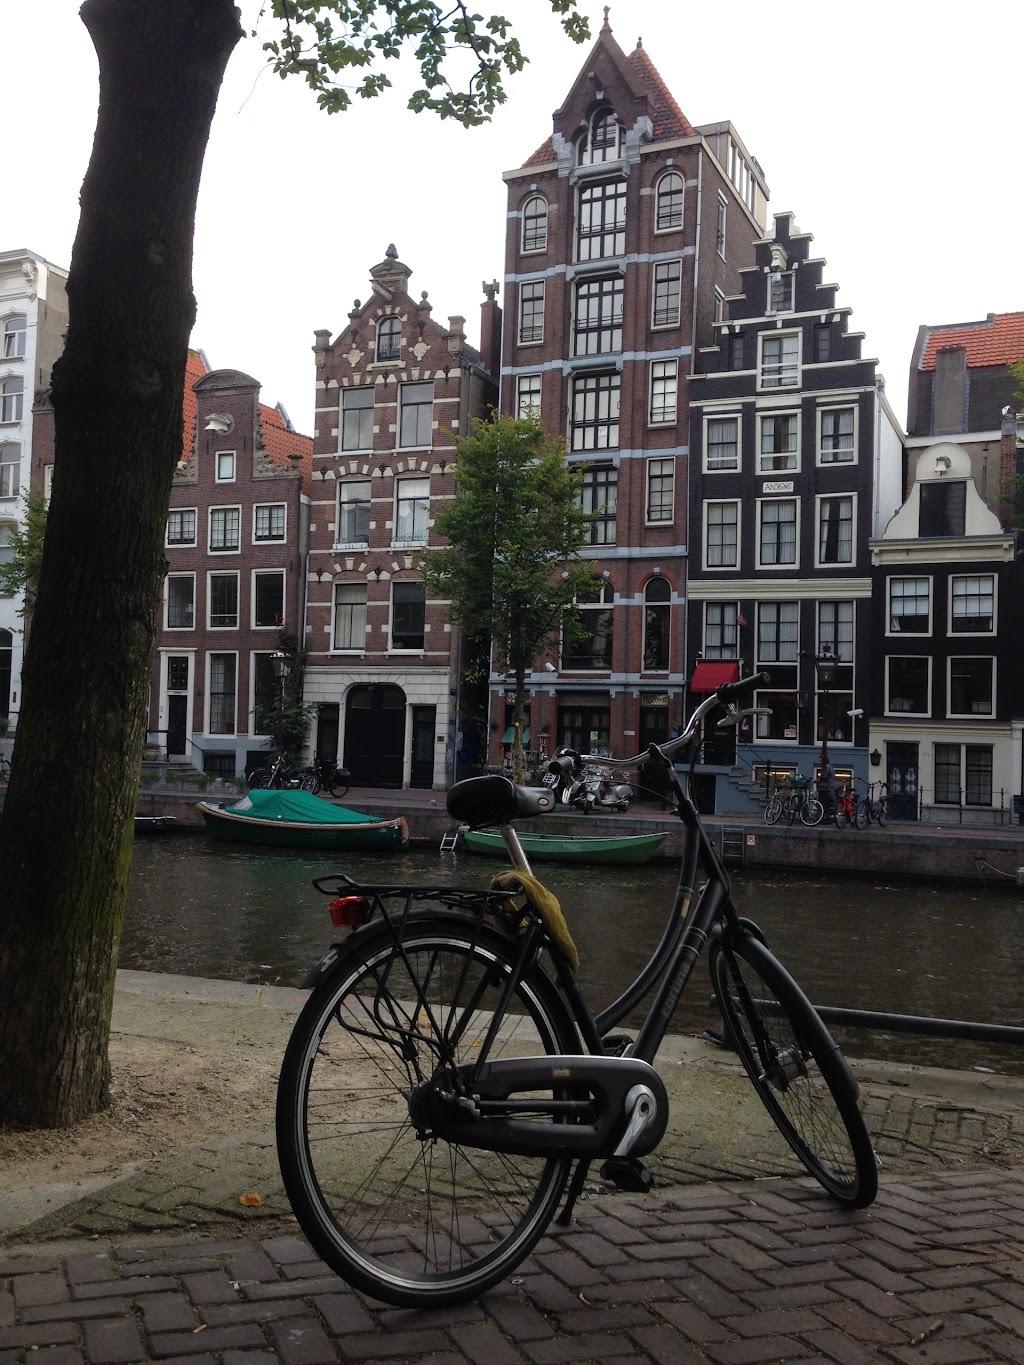 Wieden+Kennedy Amsterdam | Herengracht 258, 1016 BV Amsterdam, Netherlands | Phone: 020 712 6500